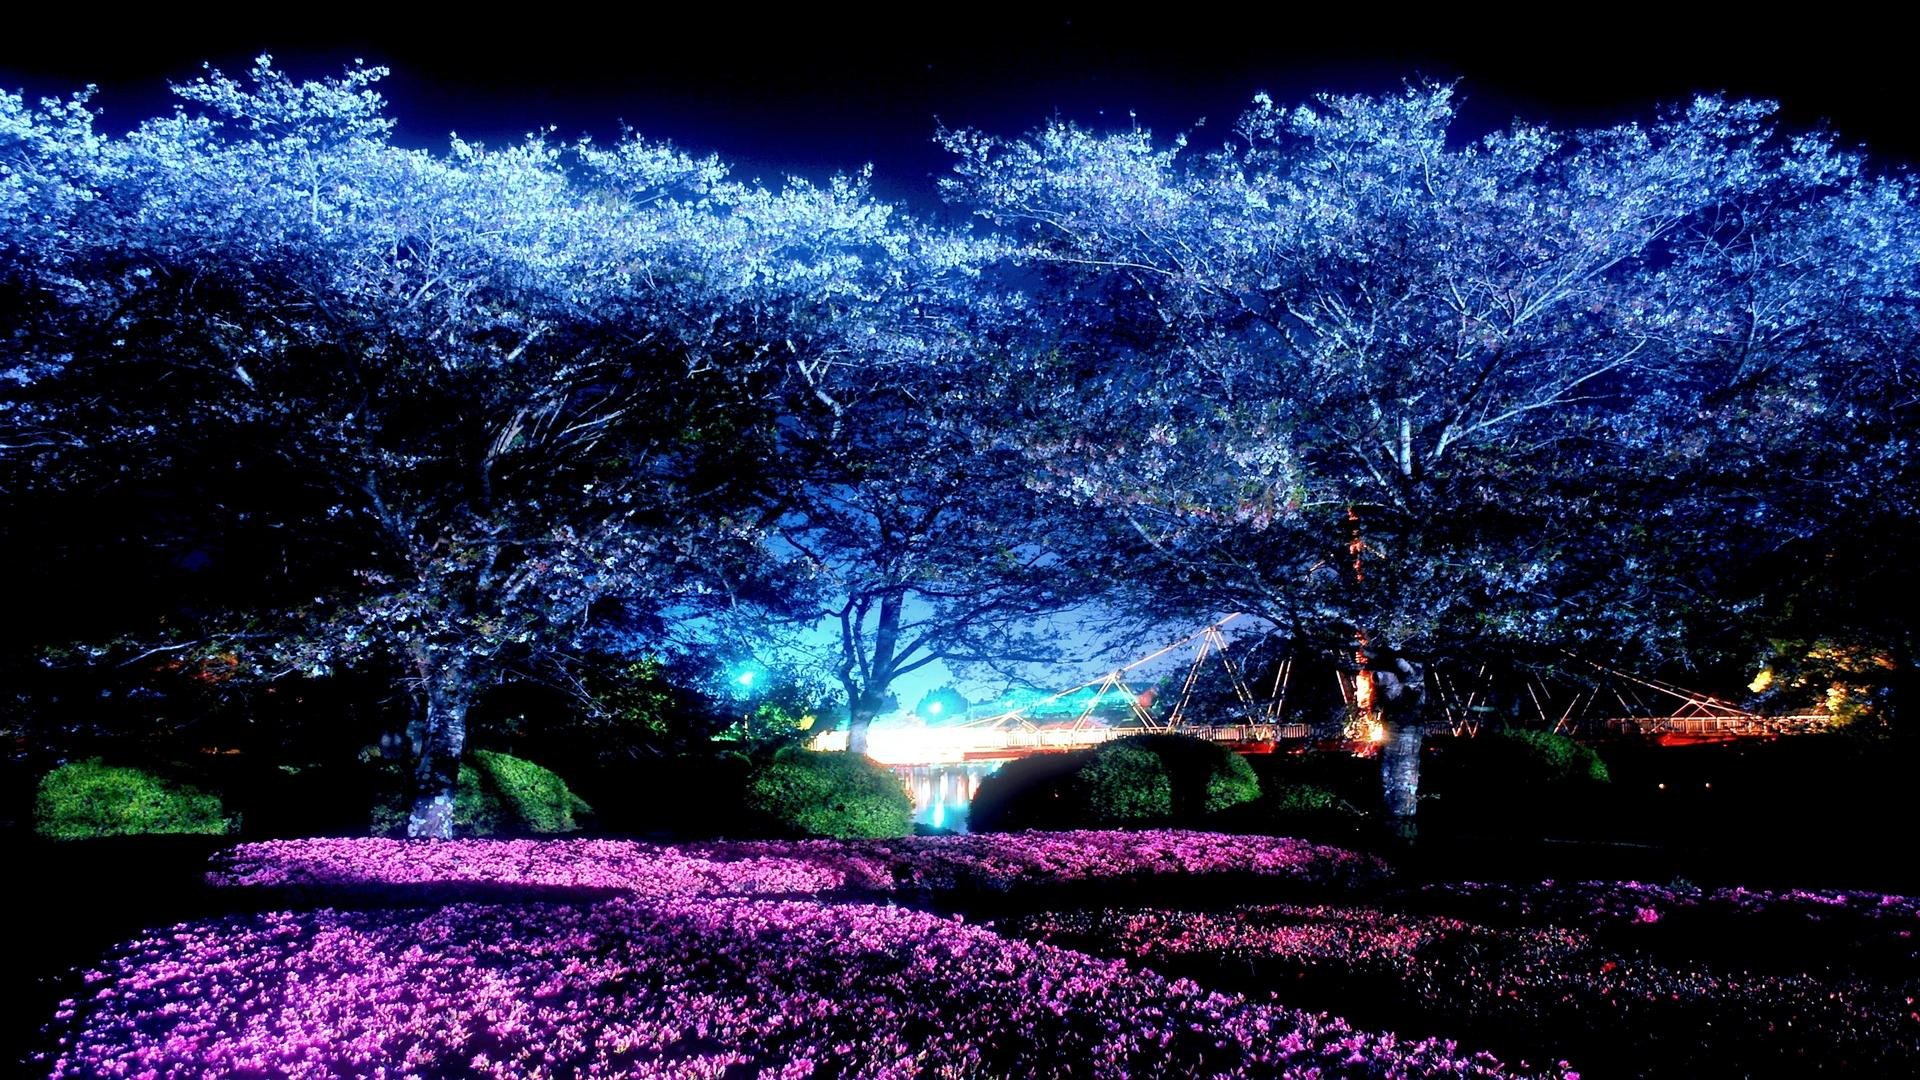 Moonlight Park Night Cherry Blossoms Wallpaper - Dark Cherry Blossom